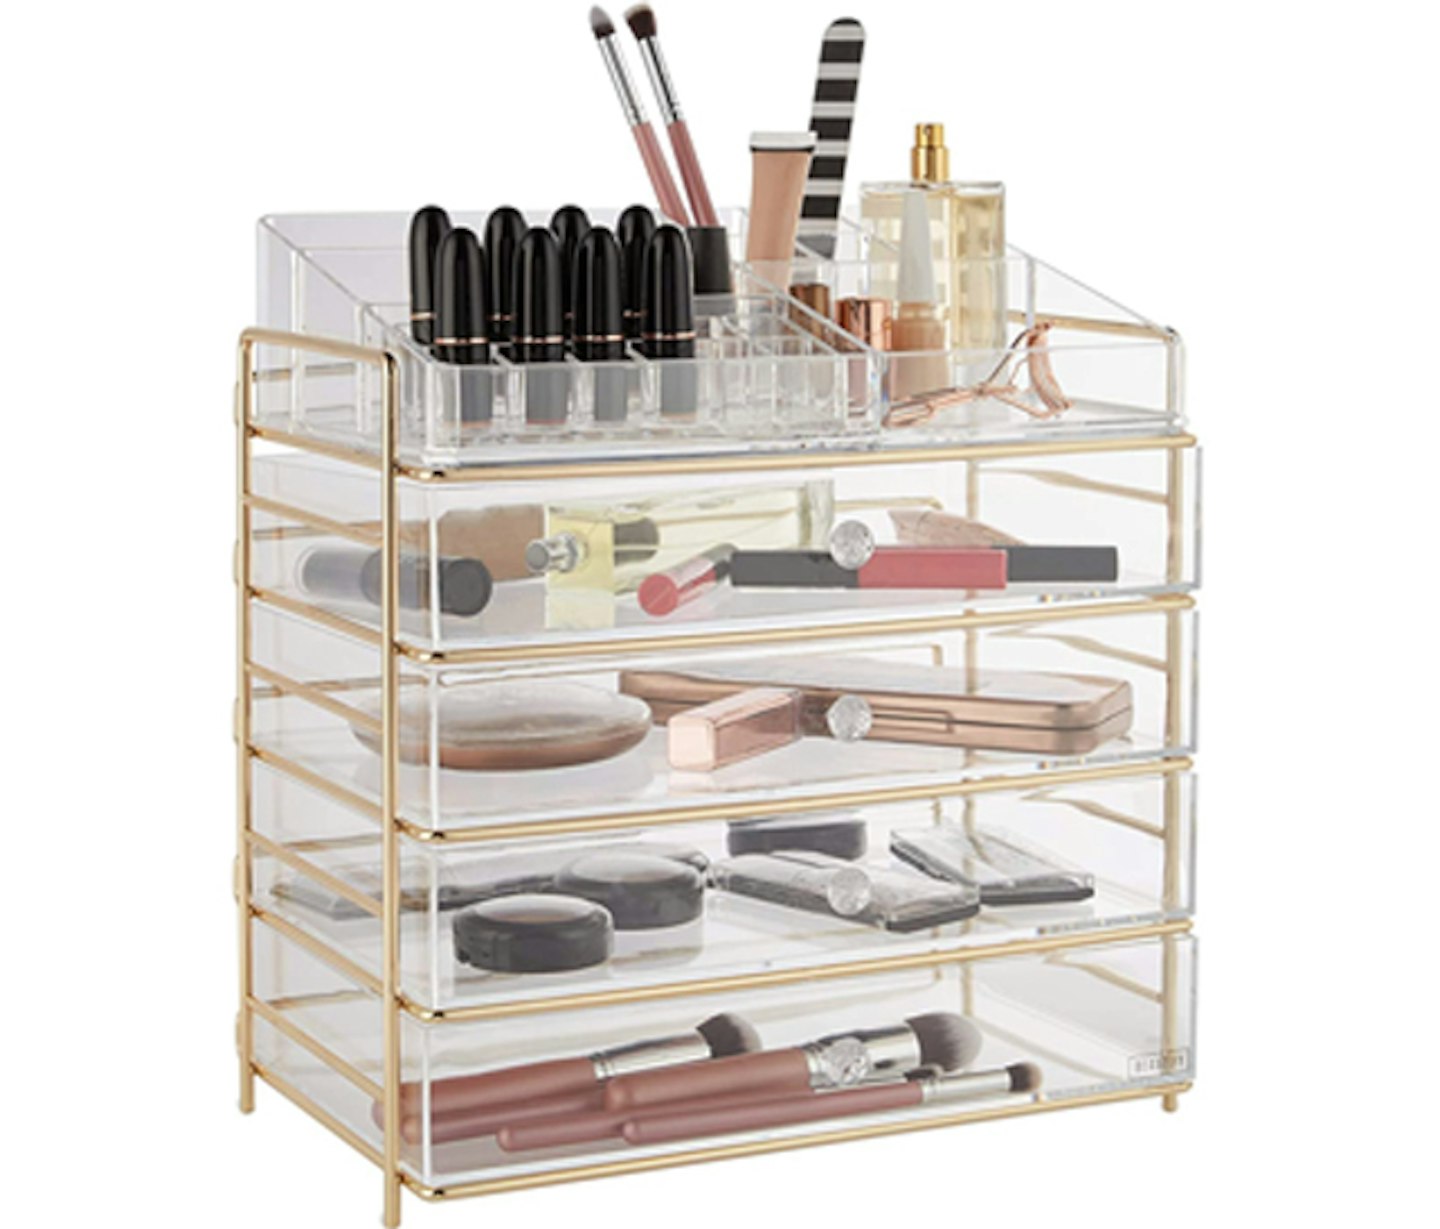 Make-up storage box drawer